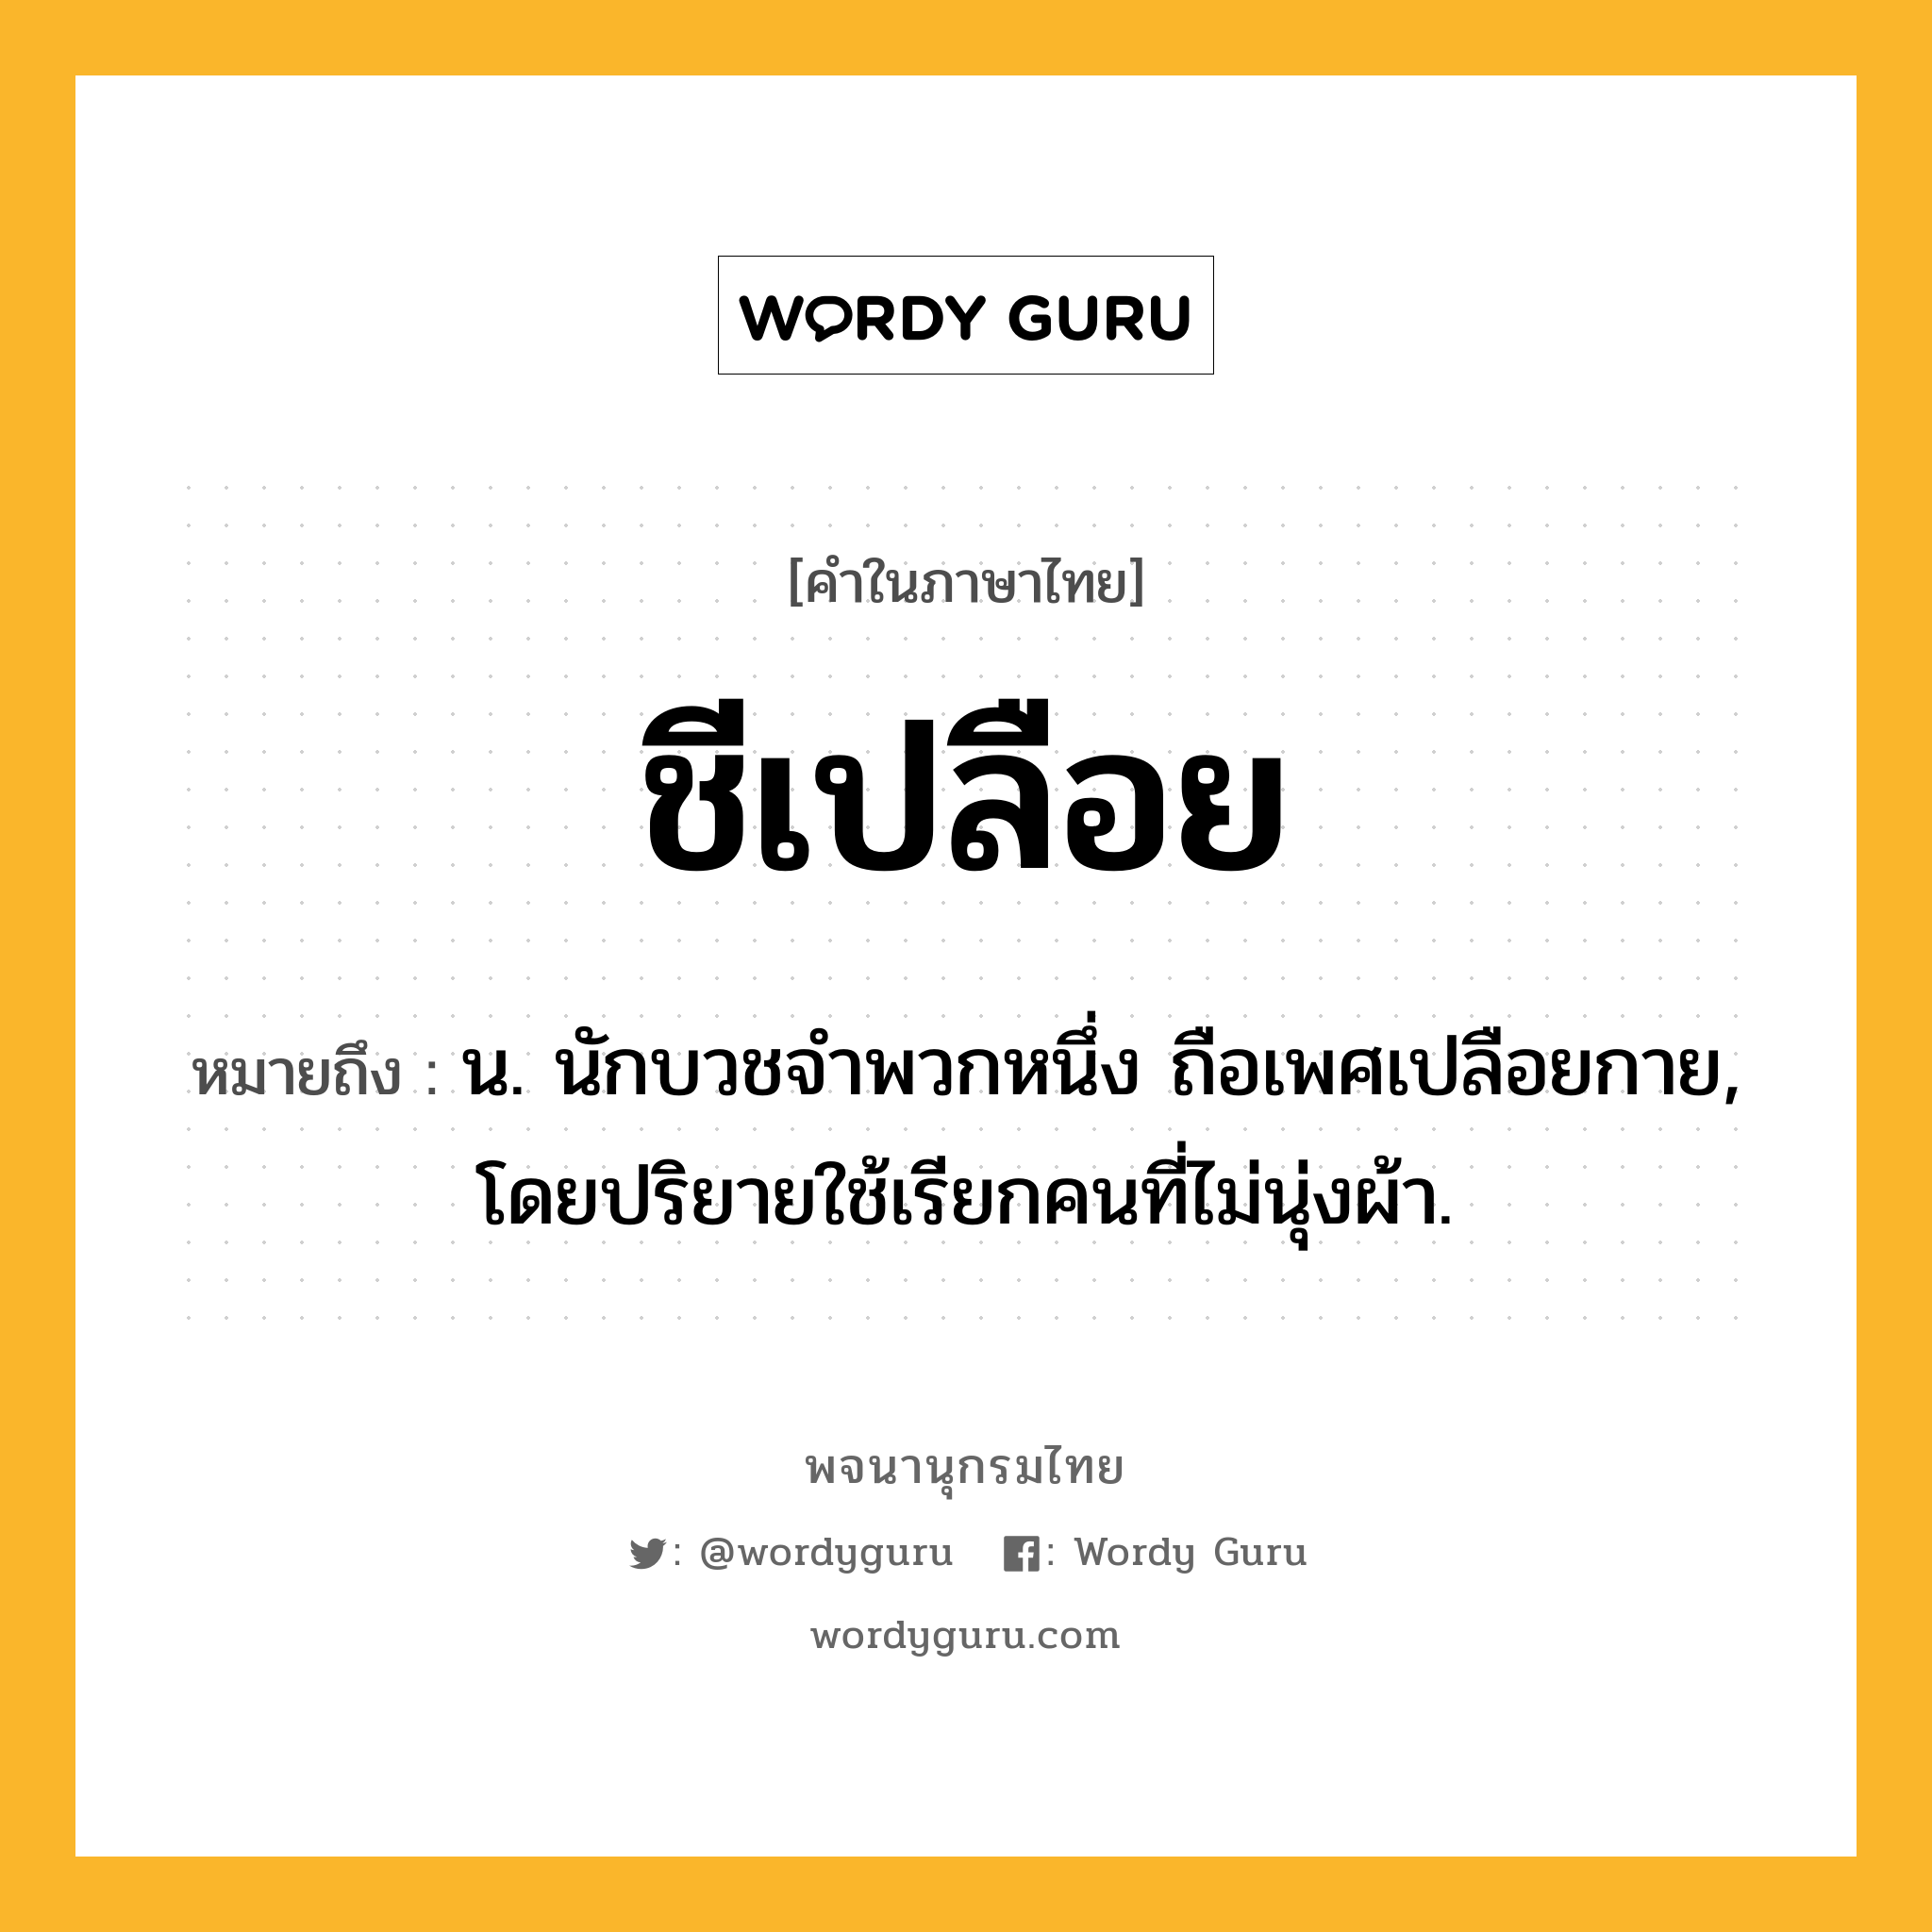 ชีเปลือย ความหมาย หมายถึงอะไร?, คำในภาษาไทย ชีเปลือย หมายถึง น. นักบวชจําพวกหนึ่ง ถือเพศเปลือยกาย, โดยปริยายใช้เรียกคนที่ไม่นุ่งผ้า.